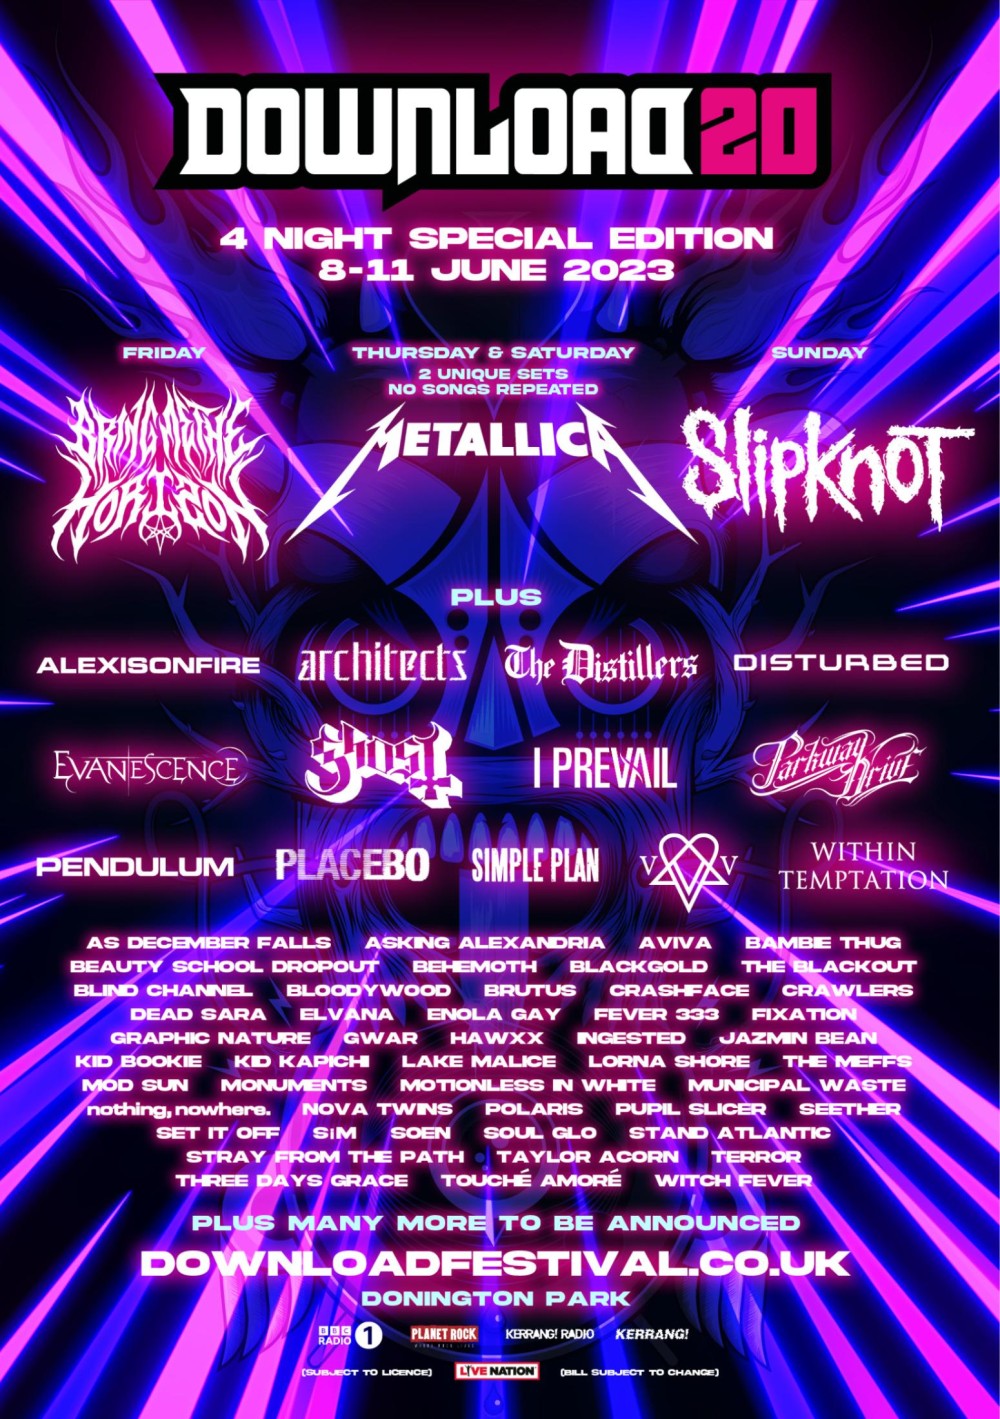 Download Festival 2023 line-up poster